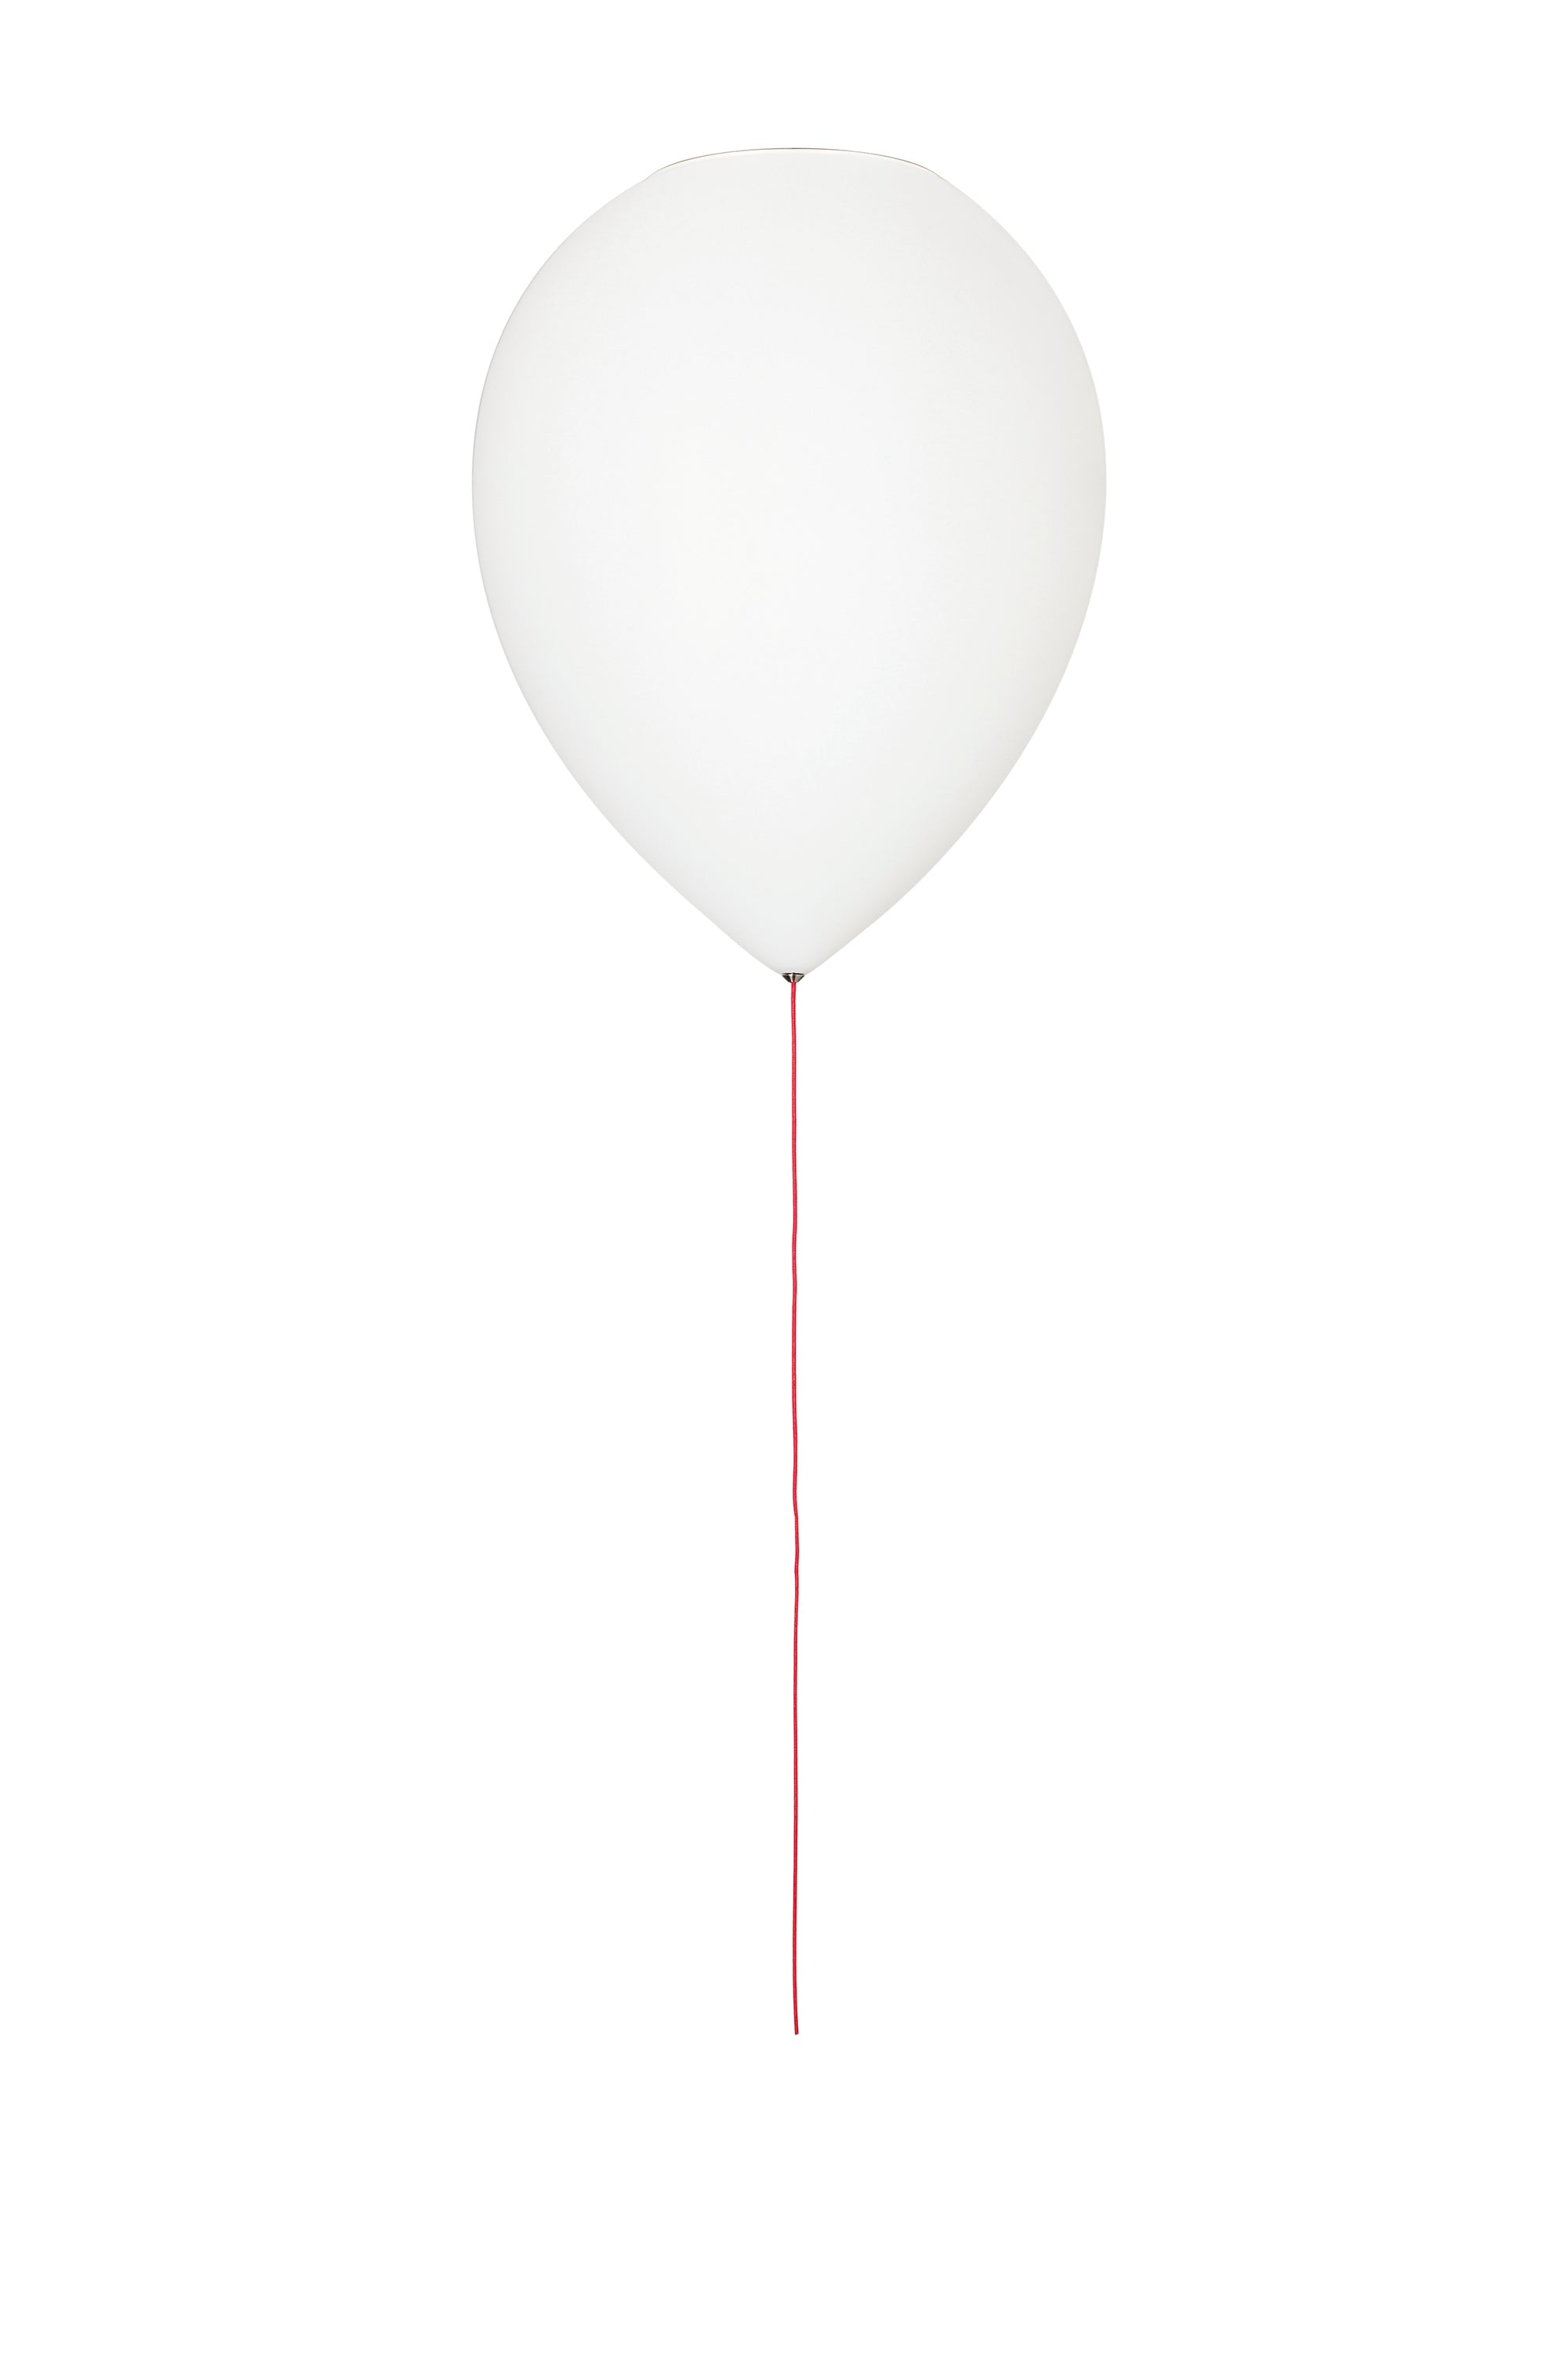 Estiluz balloon A-3050-74 Wit